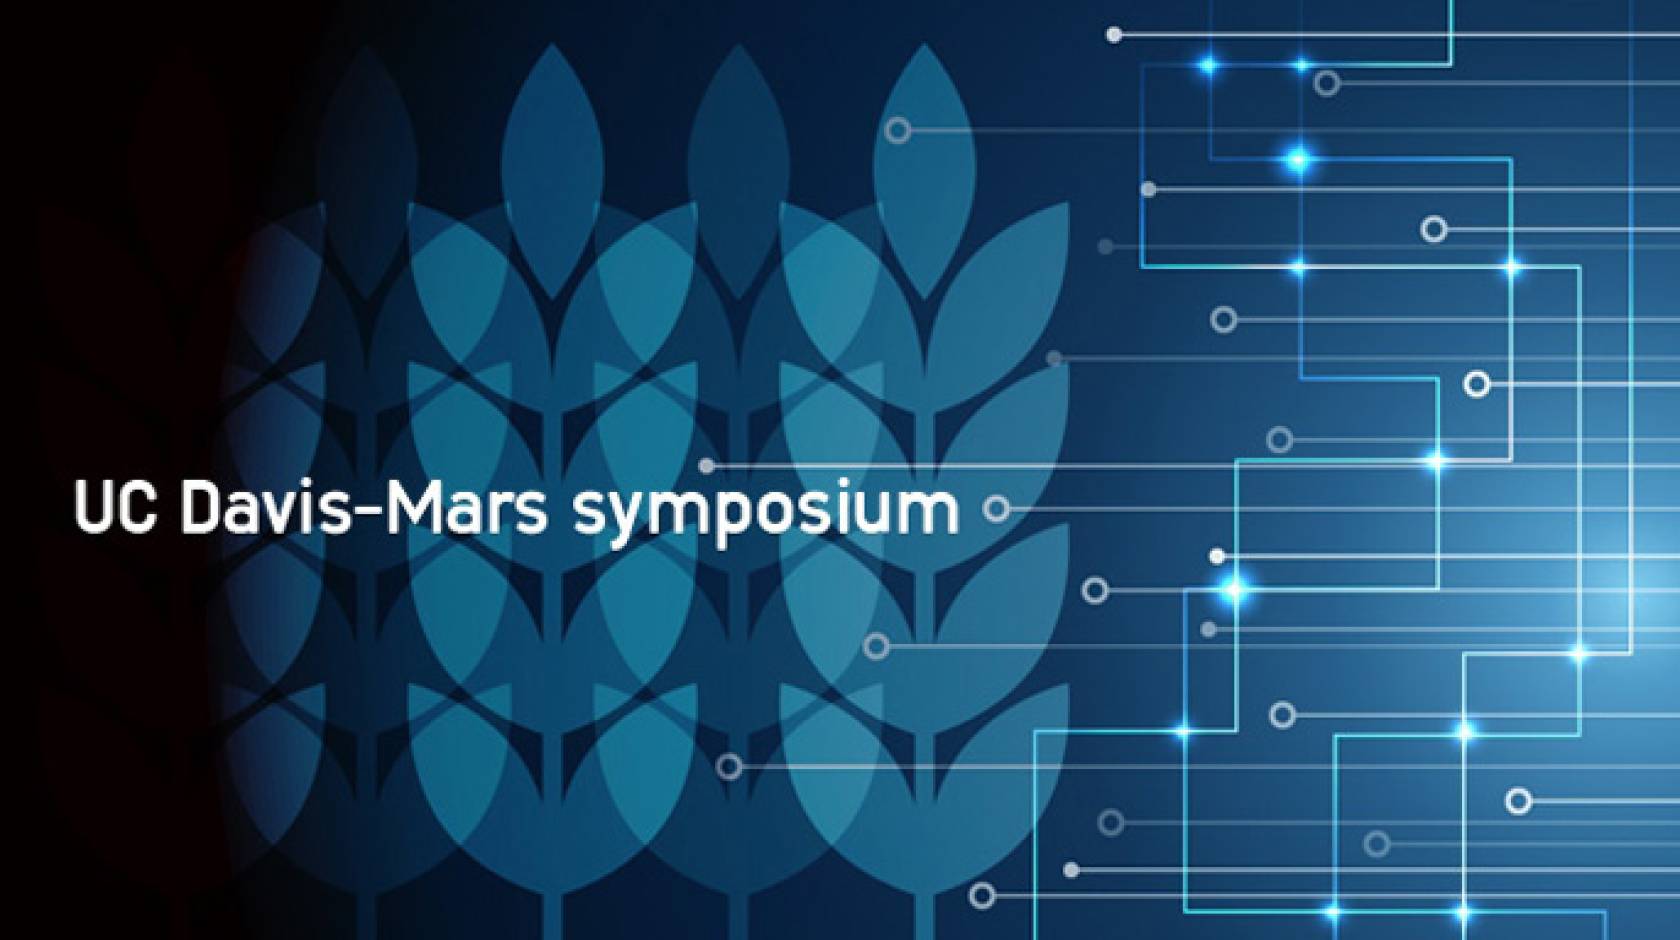 UC Davis/Mars symposium